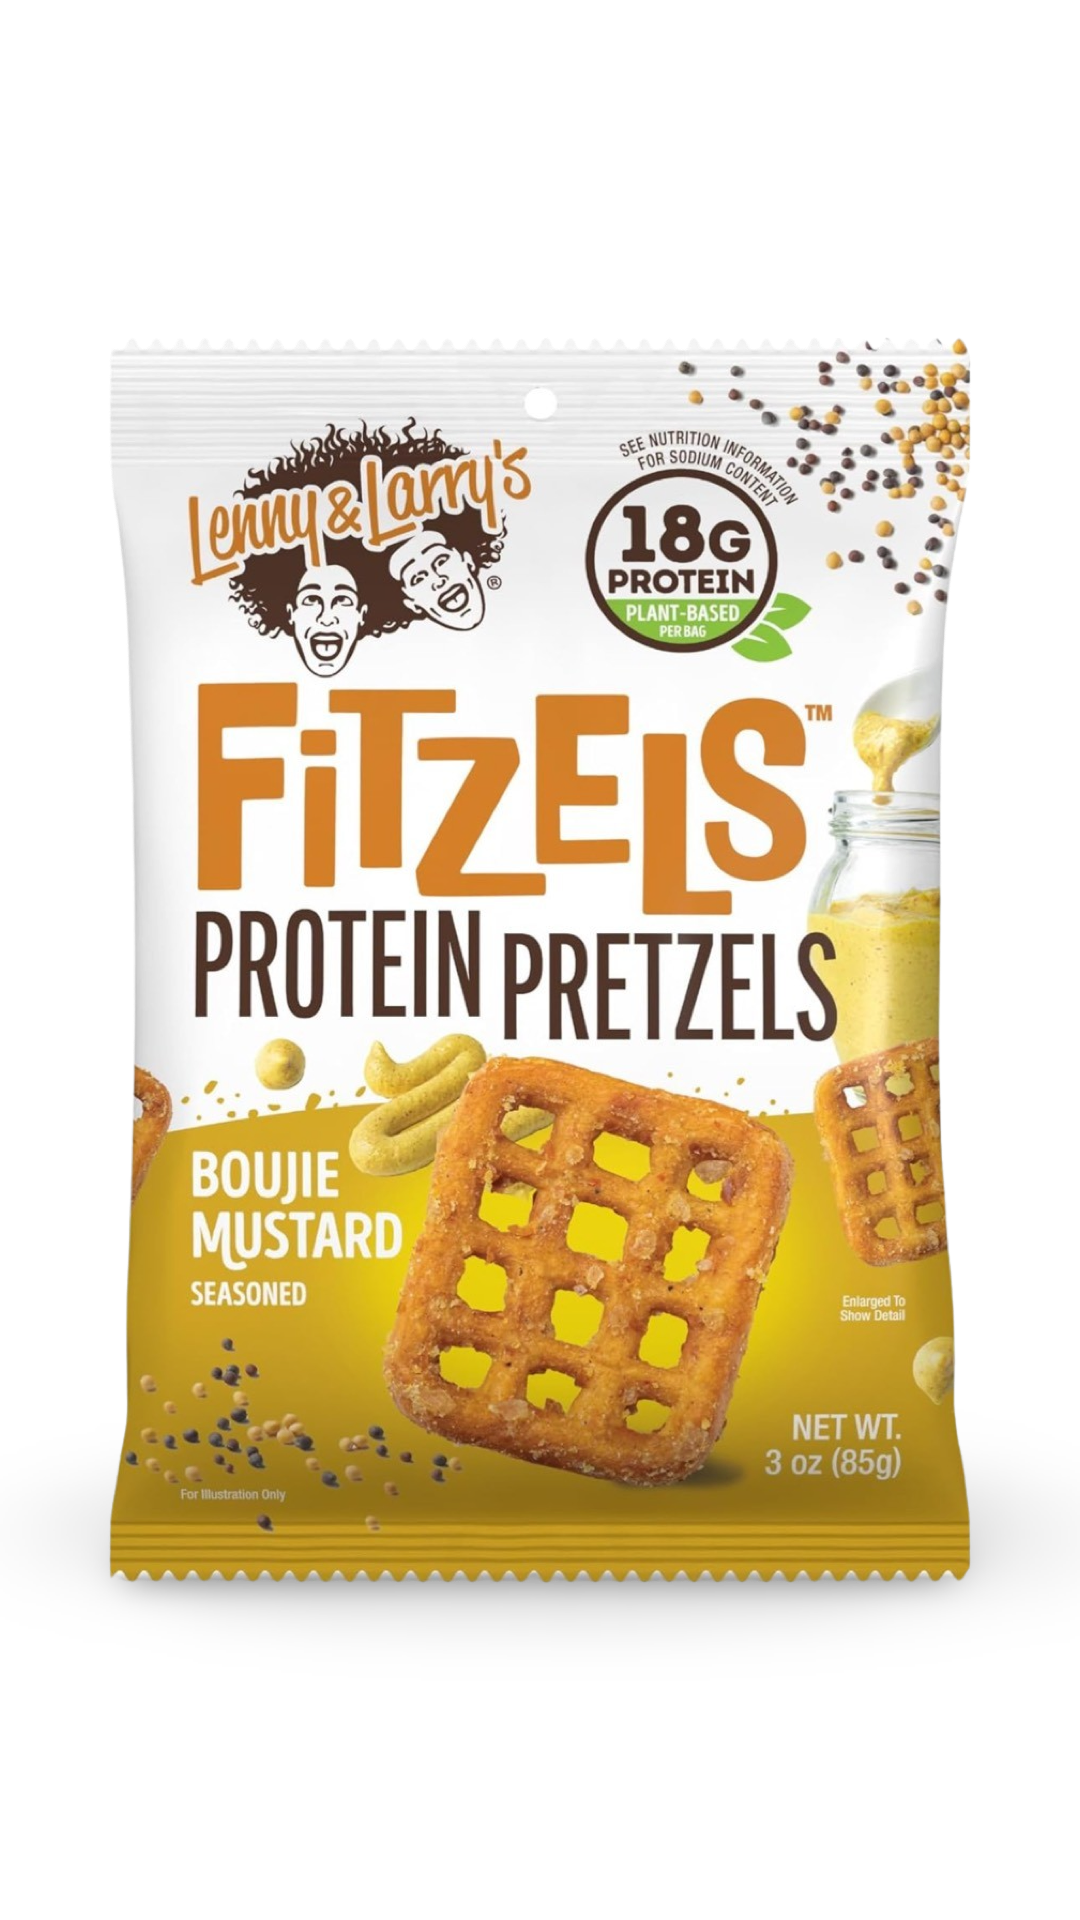 Fitzels Protein Pretzels - L&L